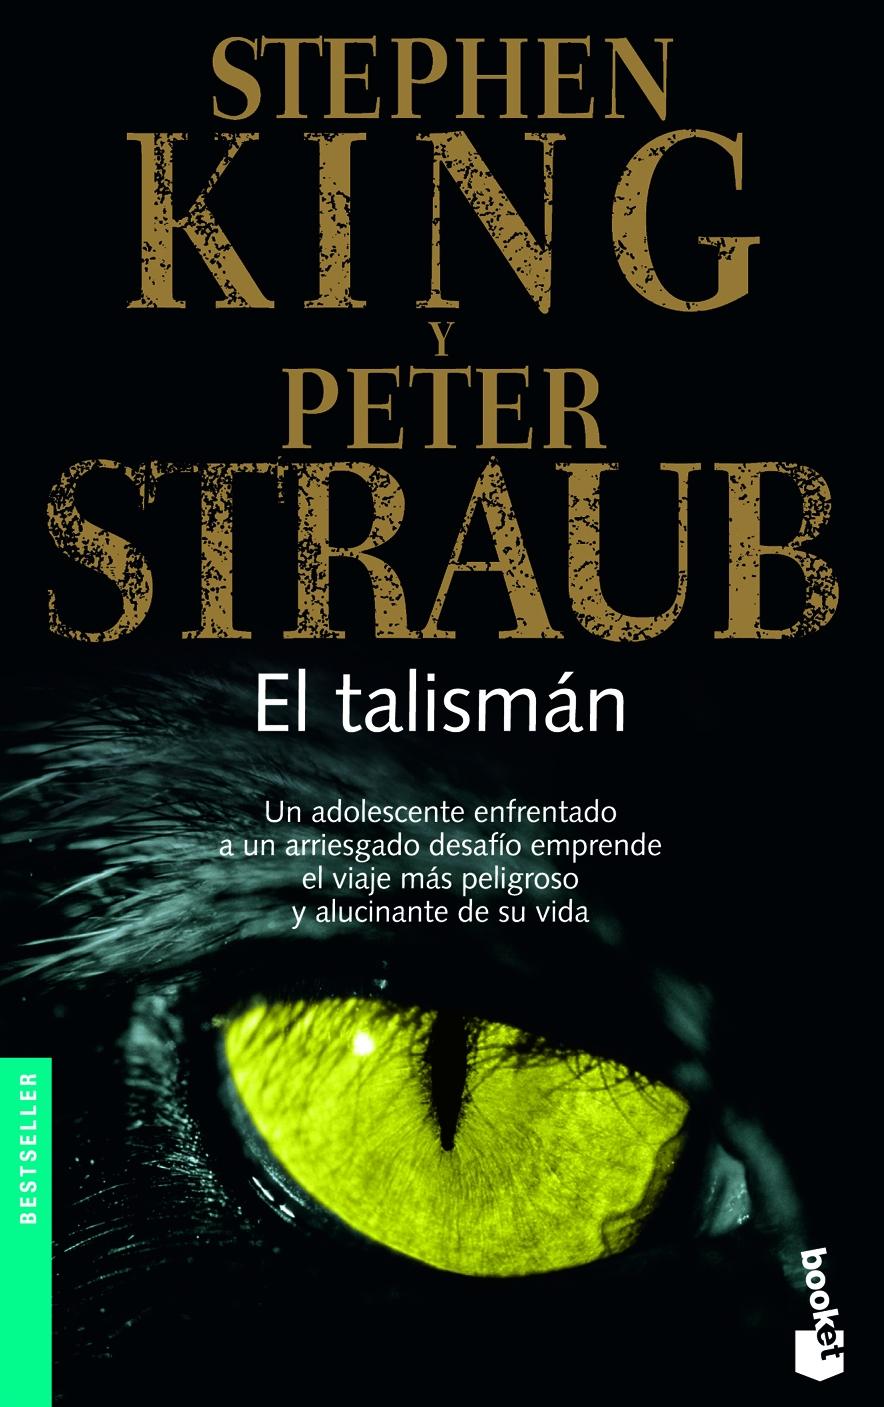 Libro de audio El talismán – Stephen King y Peter Straub